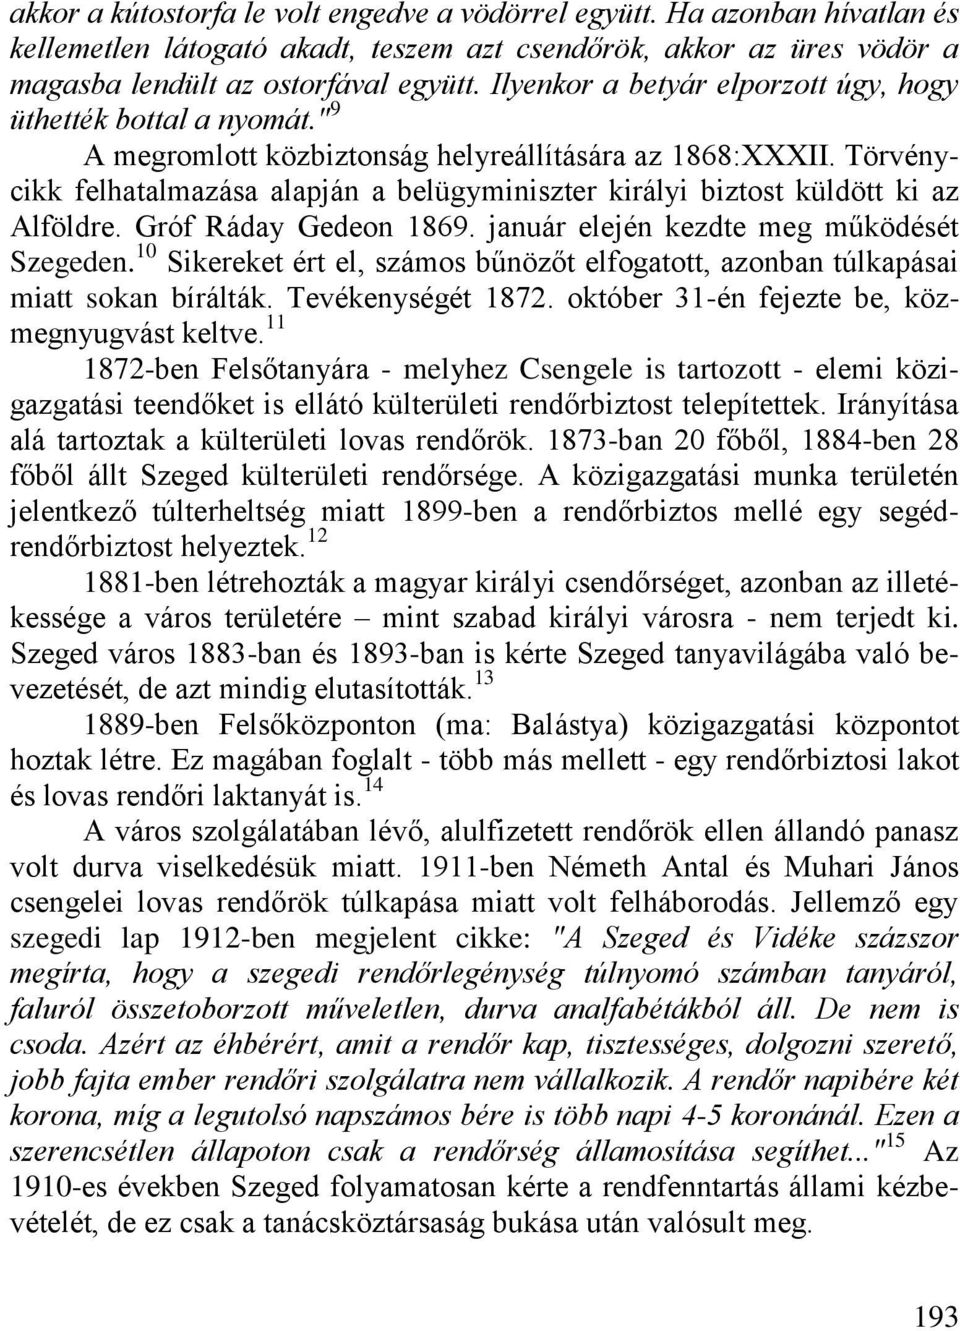 Törvénycikk felhatalmazása alapján a belügyminiszter királyi biztost küldött ki az Alföldre. Gróf Ráday Gedeon 1869. január elején kezdte meg működését Szegeden.